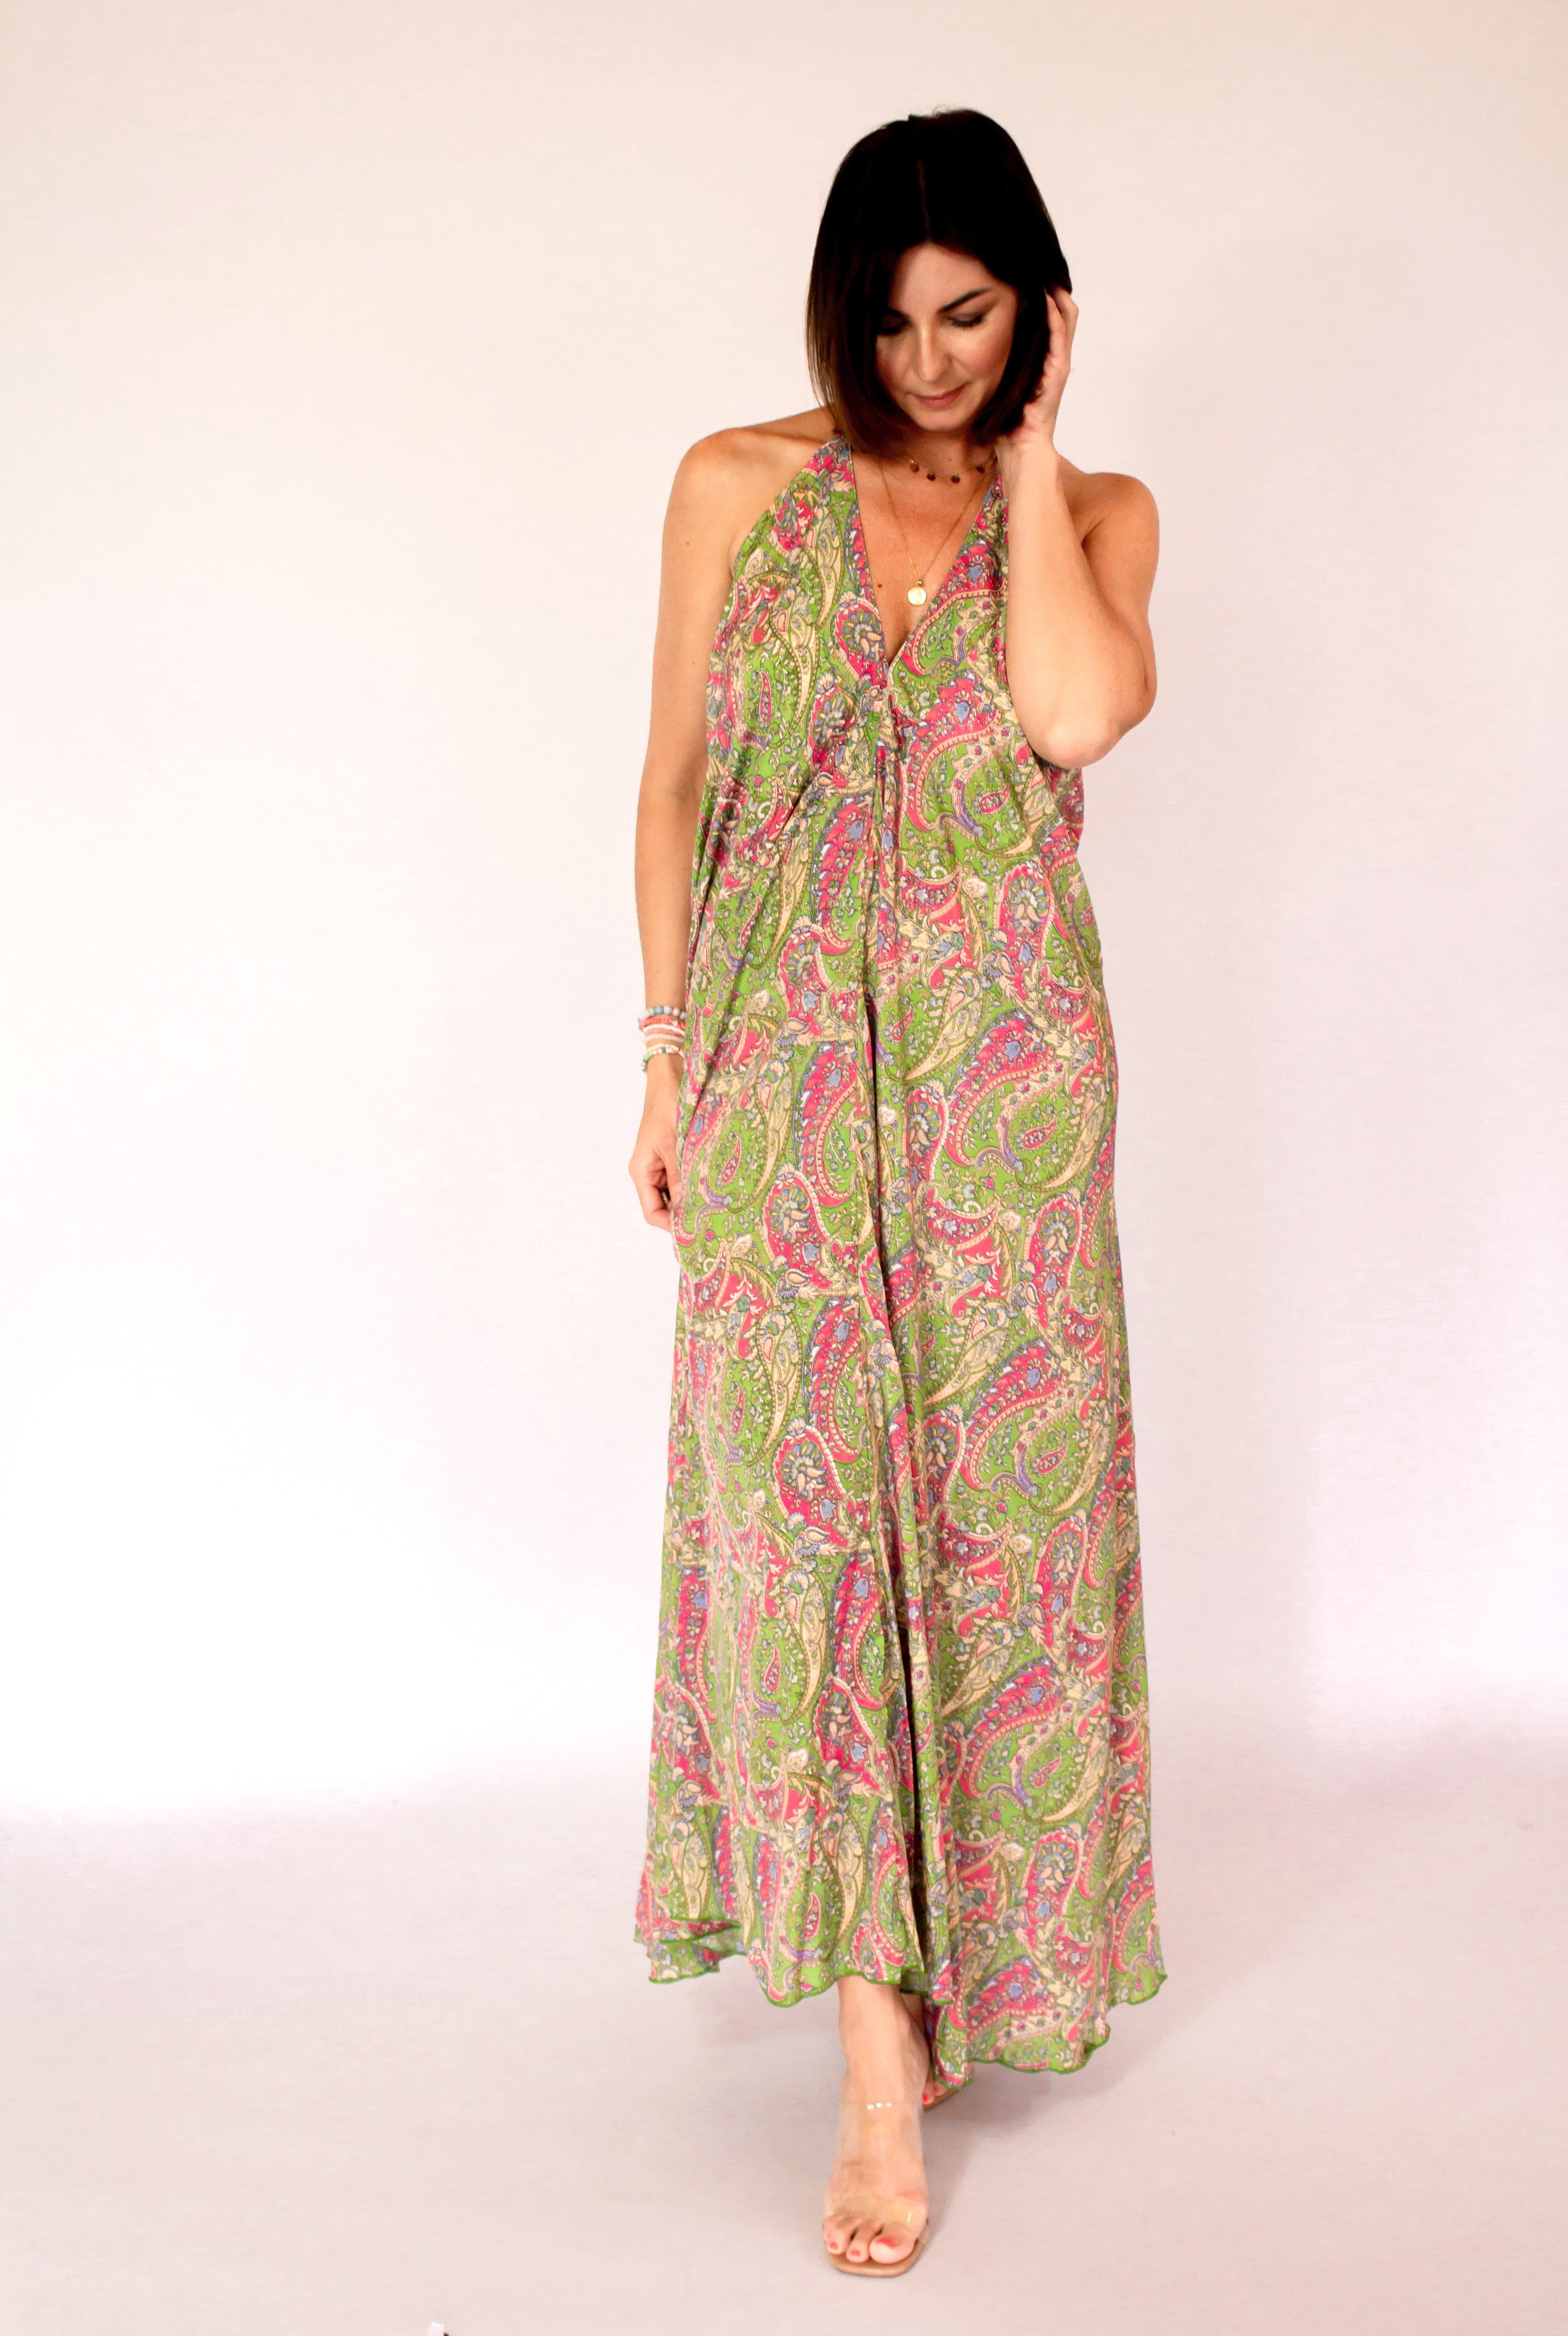 MonCaprise by Clothè Strandkleid Seidenkleid Maxikleid Kleid mit tiefem Rückenausschnitt grün-pink leicht ausgestellte Passform, leicht & luftig